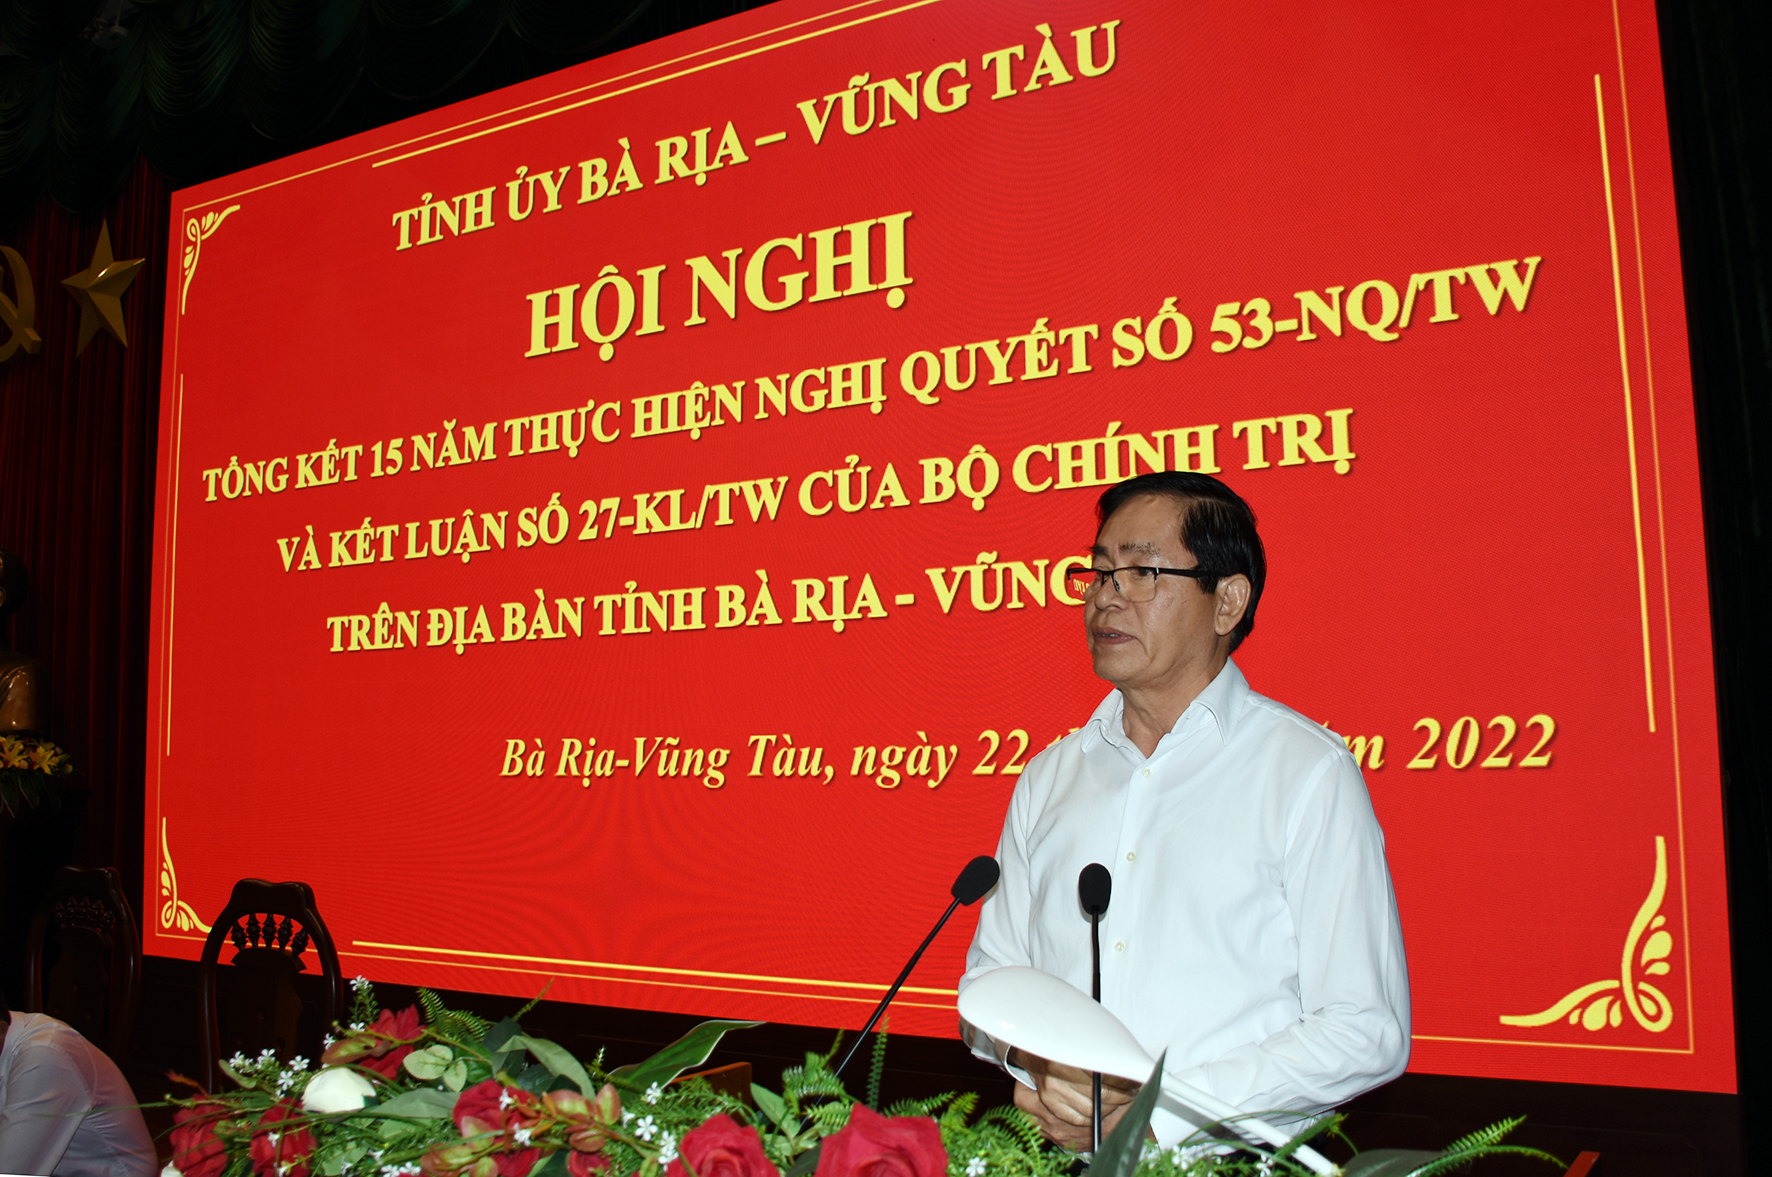 Ông Phạm Viết Thanh, Ủy viên Trung ương Đảng, Bí thư Tỉnh ủy, Chủ tịch HĐND tỉnh, Trưởng Ban Chỉ đạo tổng kết Nghị quyết số 53-NQ/TW tỉnh phát biểu kết luận hội nghị.